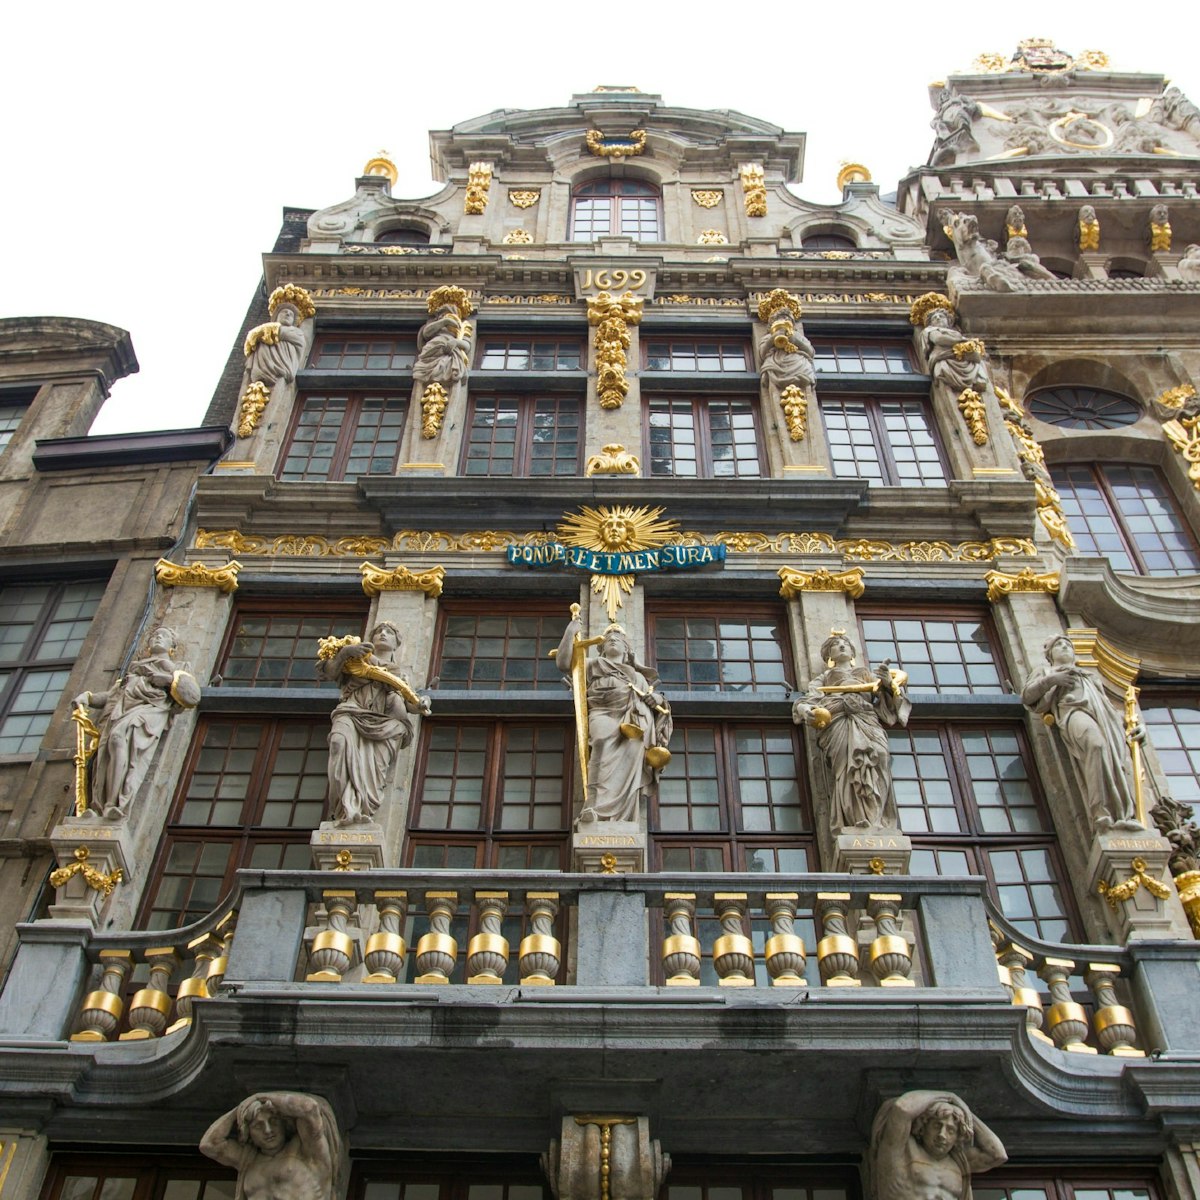 Le Renard upper facade